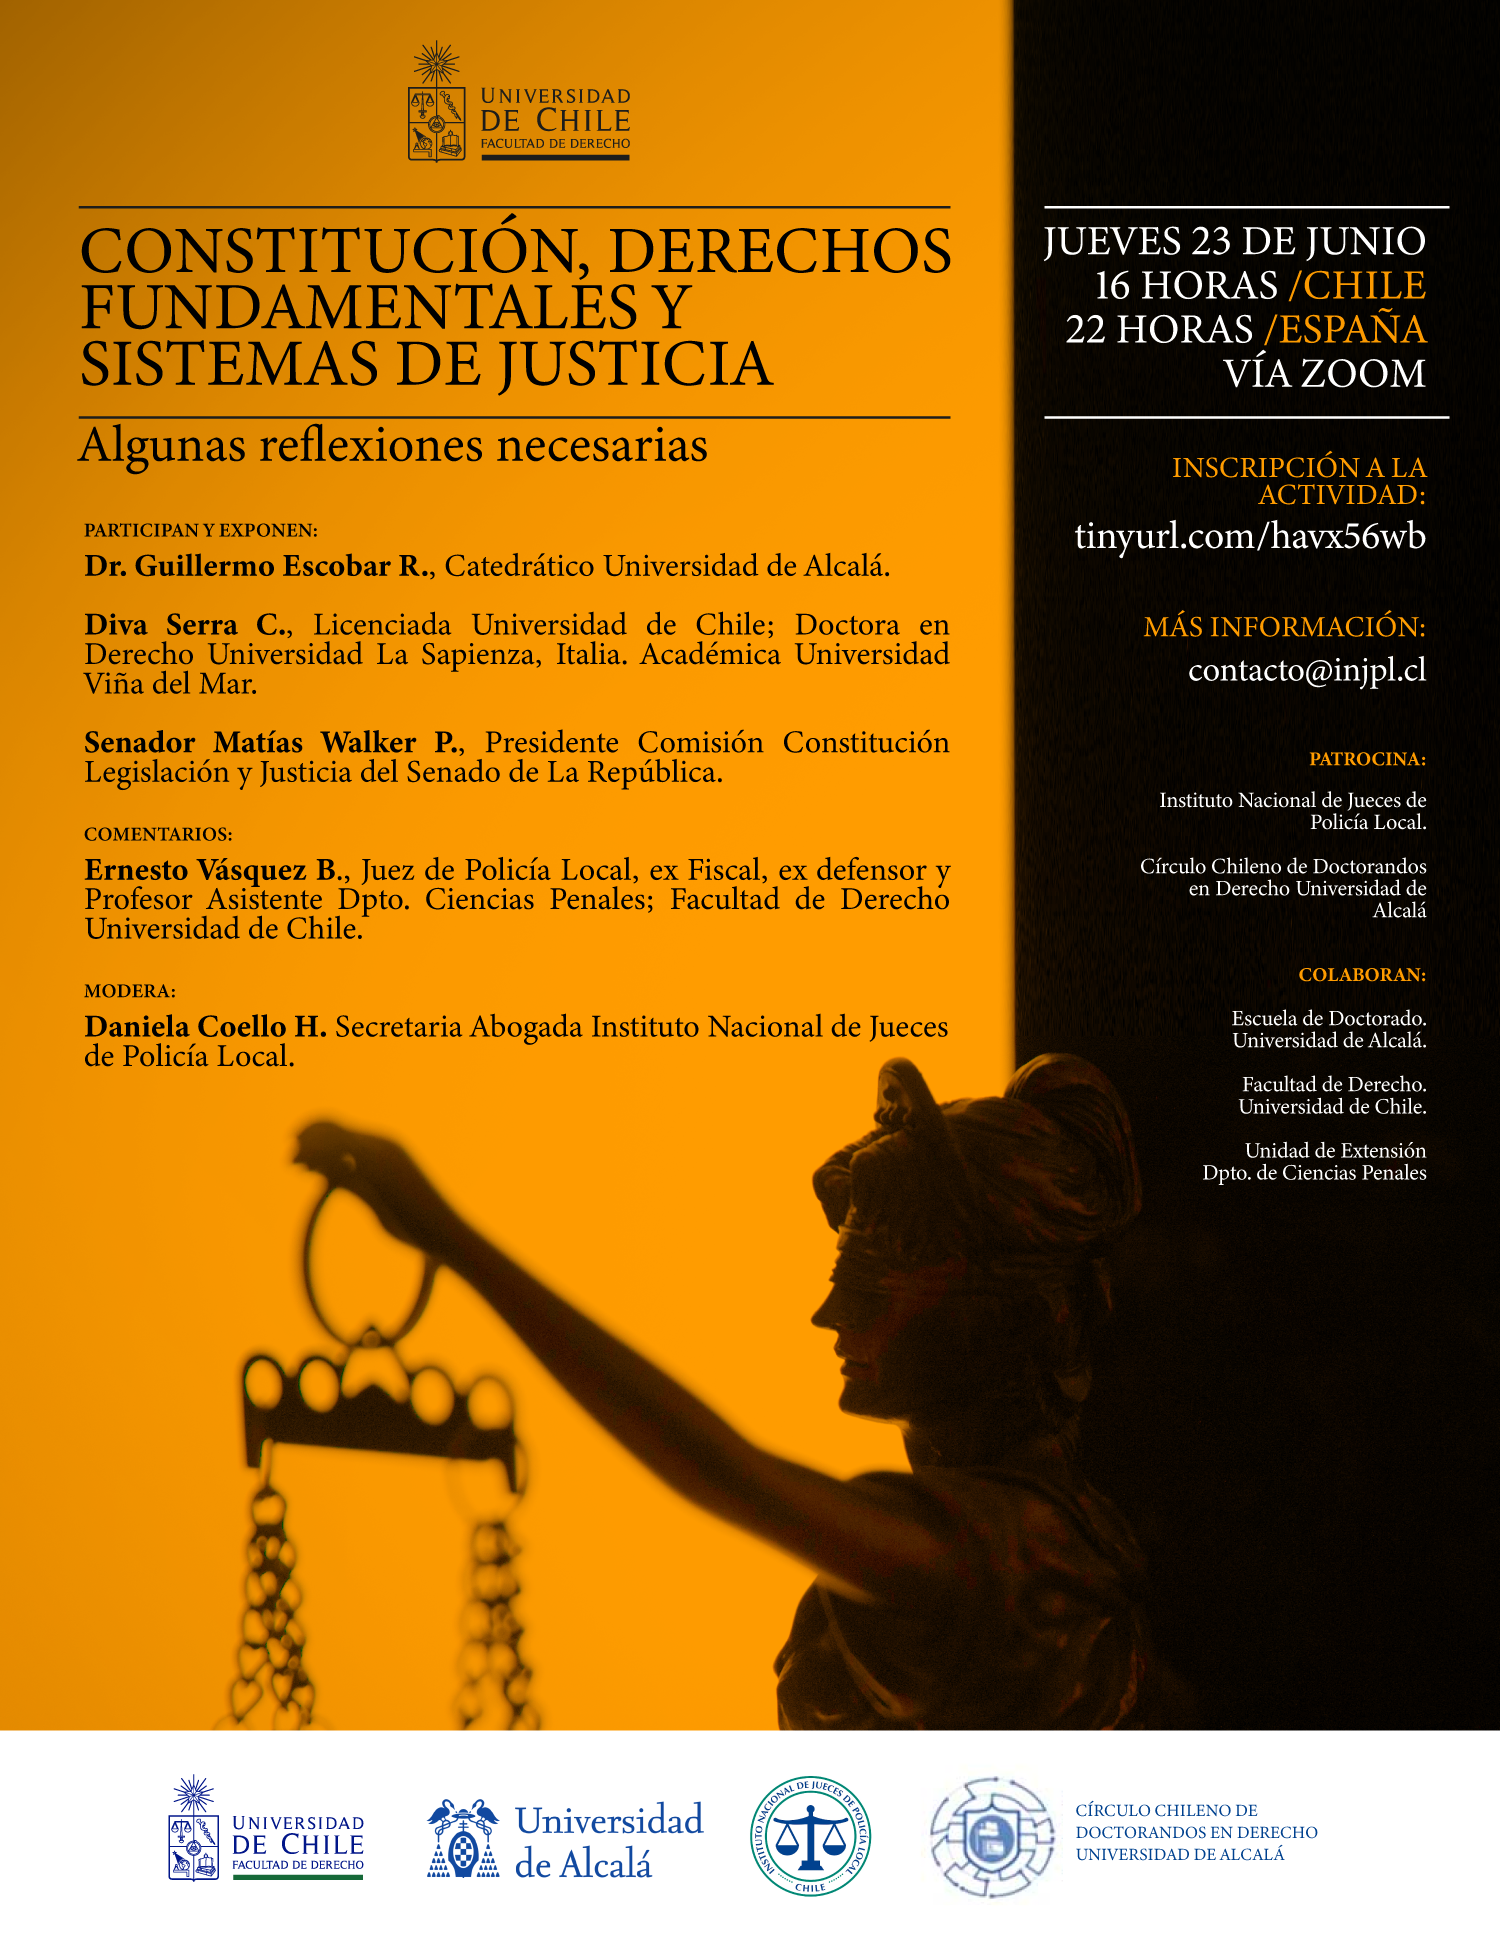 Universidad de Chile invita a Seminario "Constitución, derechos fundamentales y sistemas de justicia"